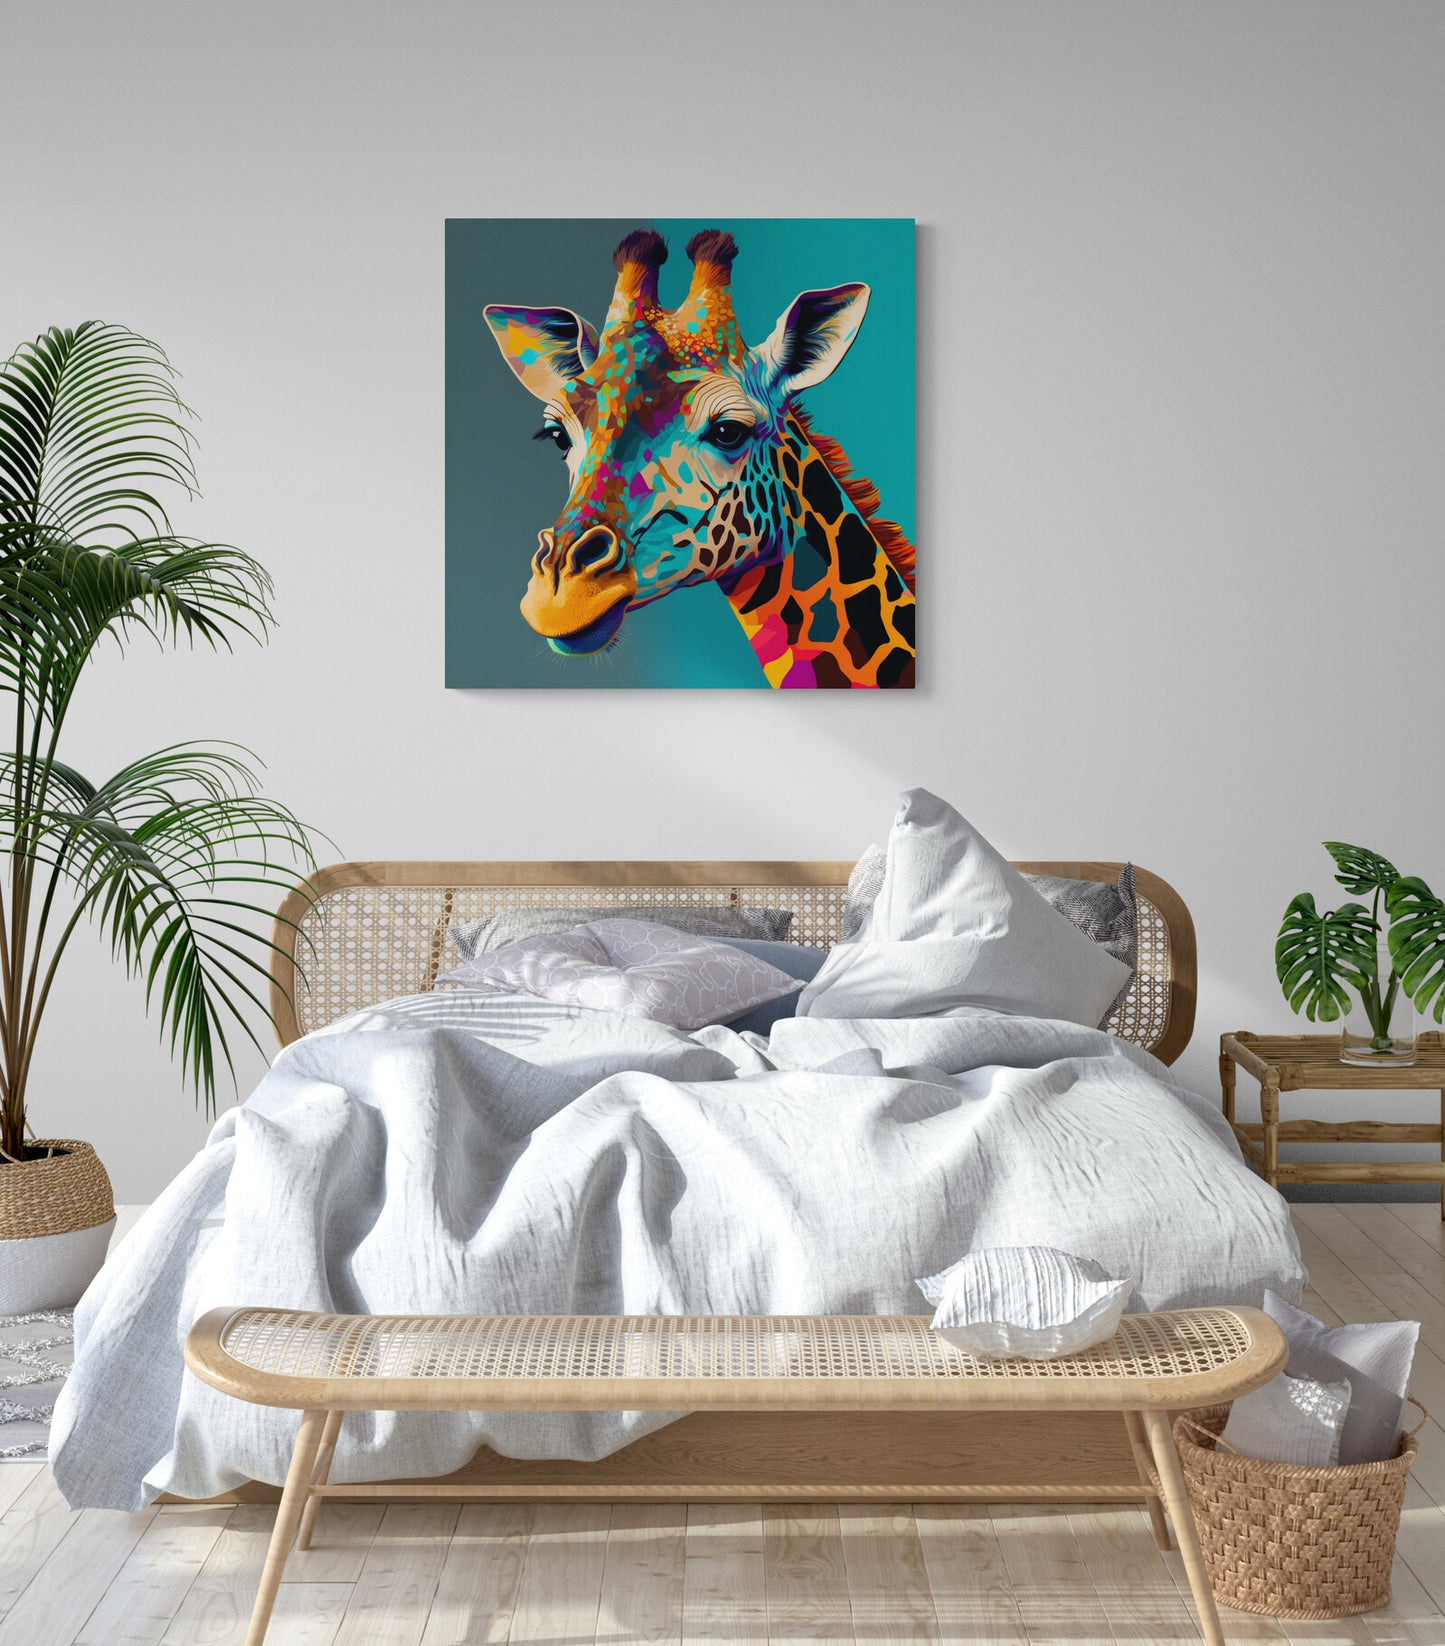 Tableau decoration pop art, girafe coloré sur fond bleu